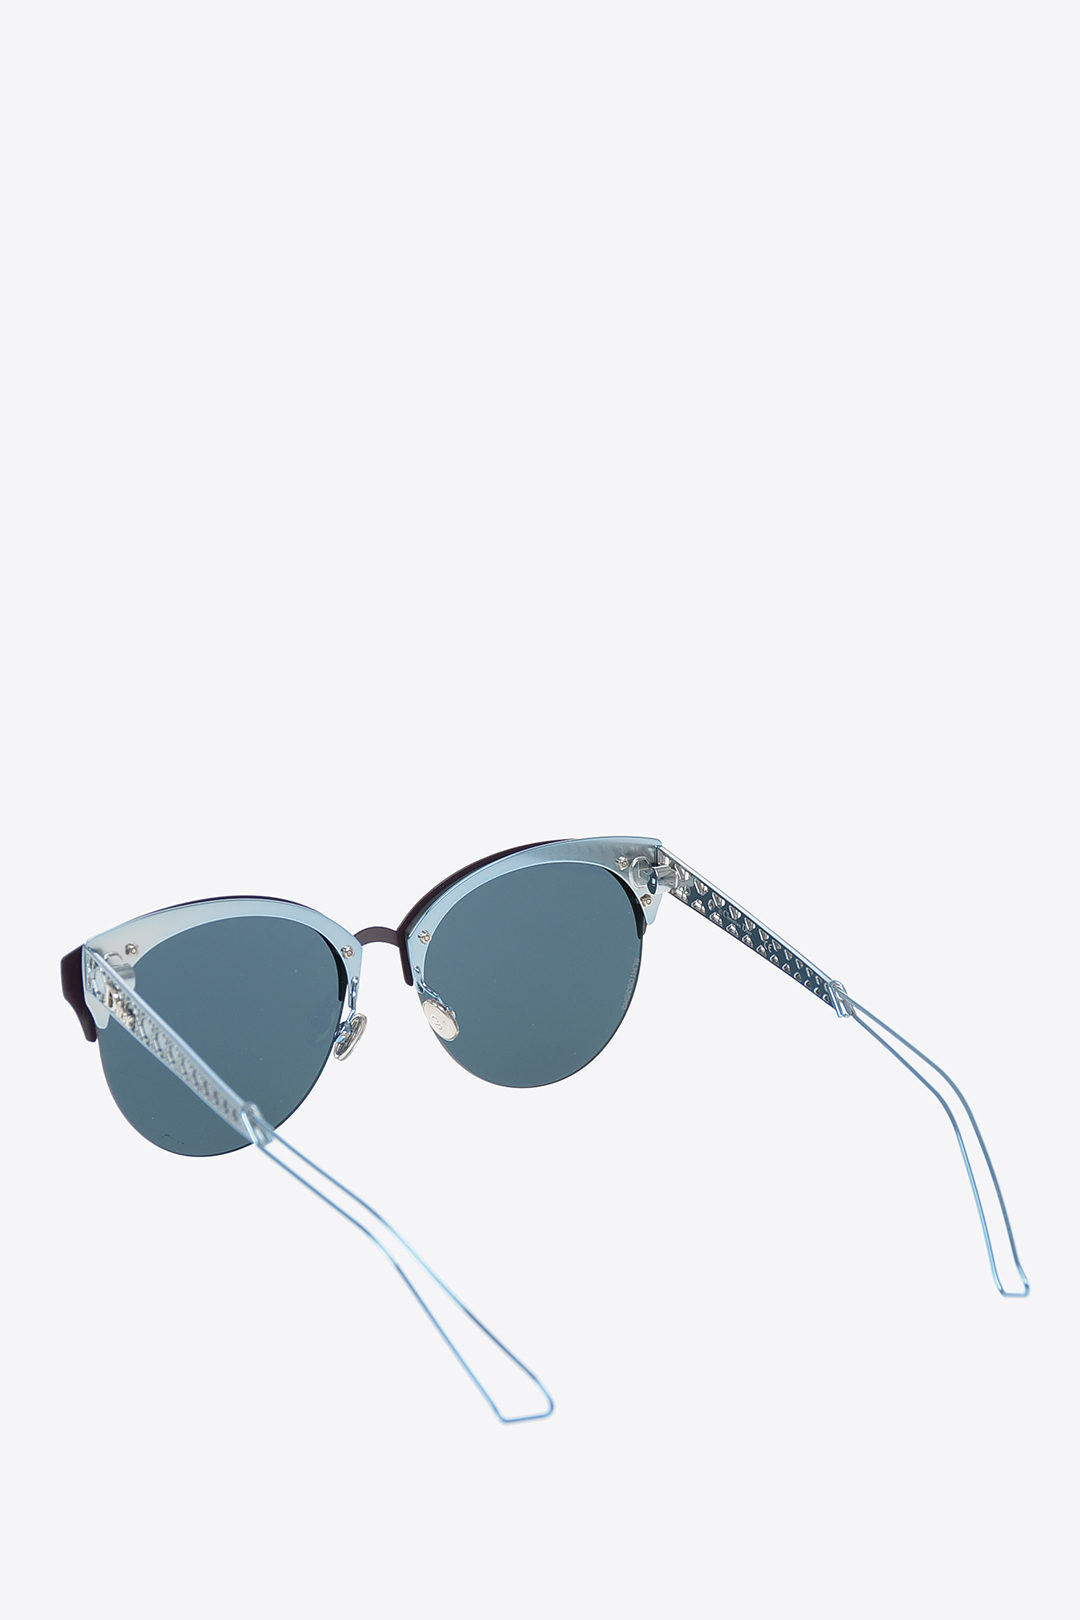 Christian Dior DIORAMACLUB 55mm Sunglasses w Case  Luxury Eyewear  Holiday Gifts  ShopHQ   YouTube